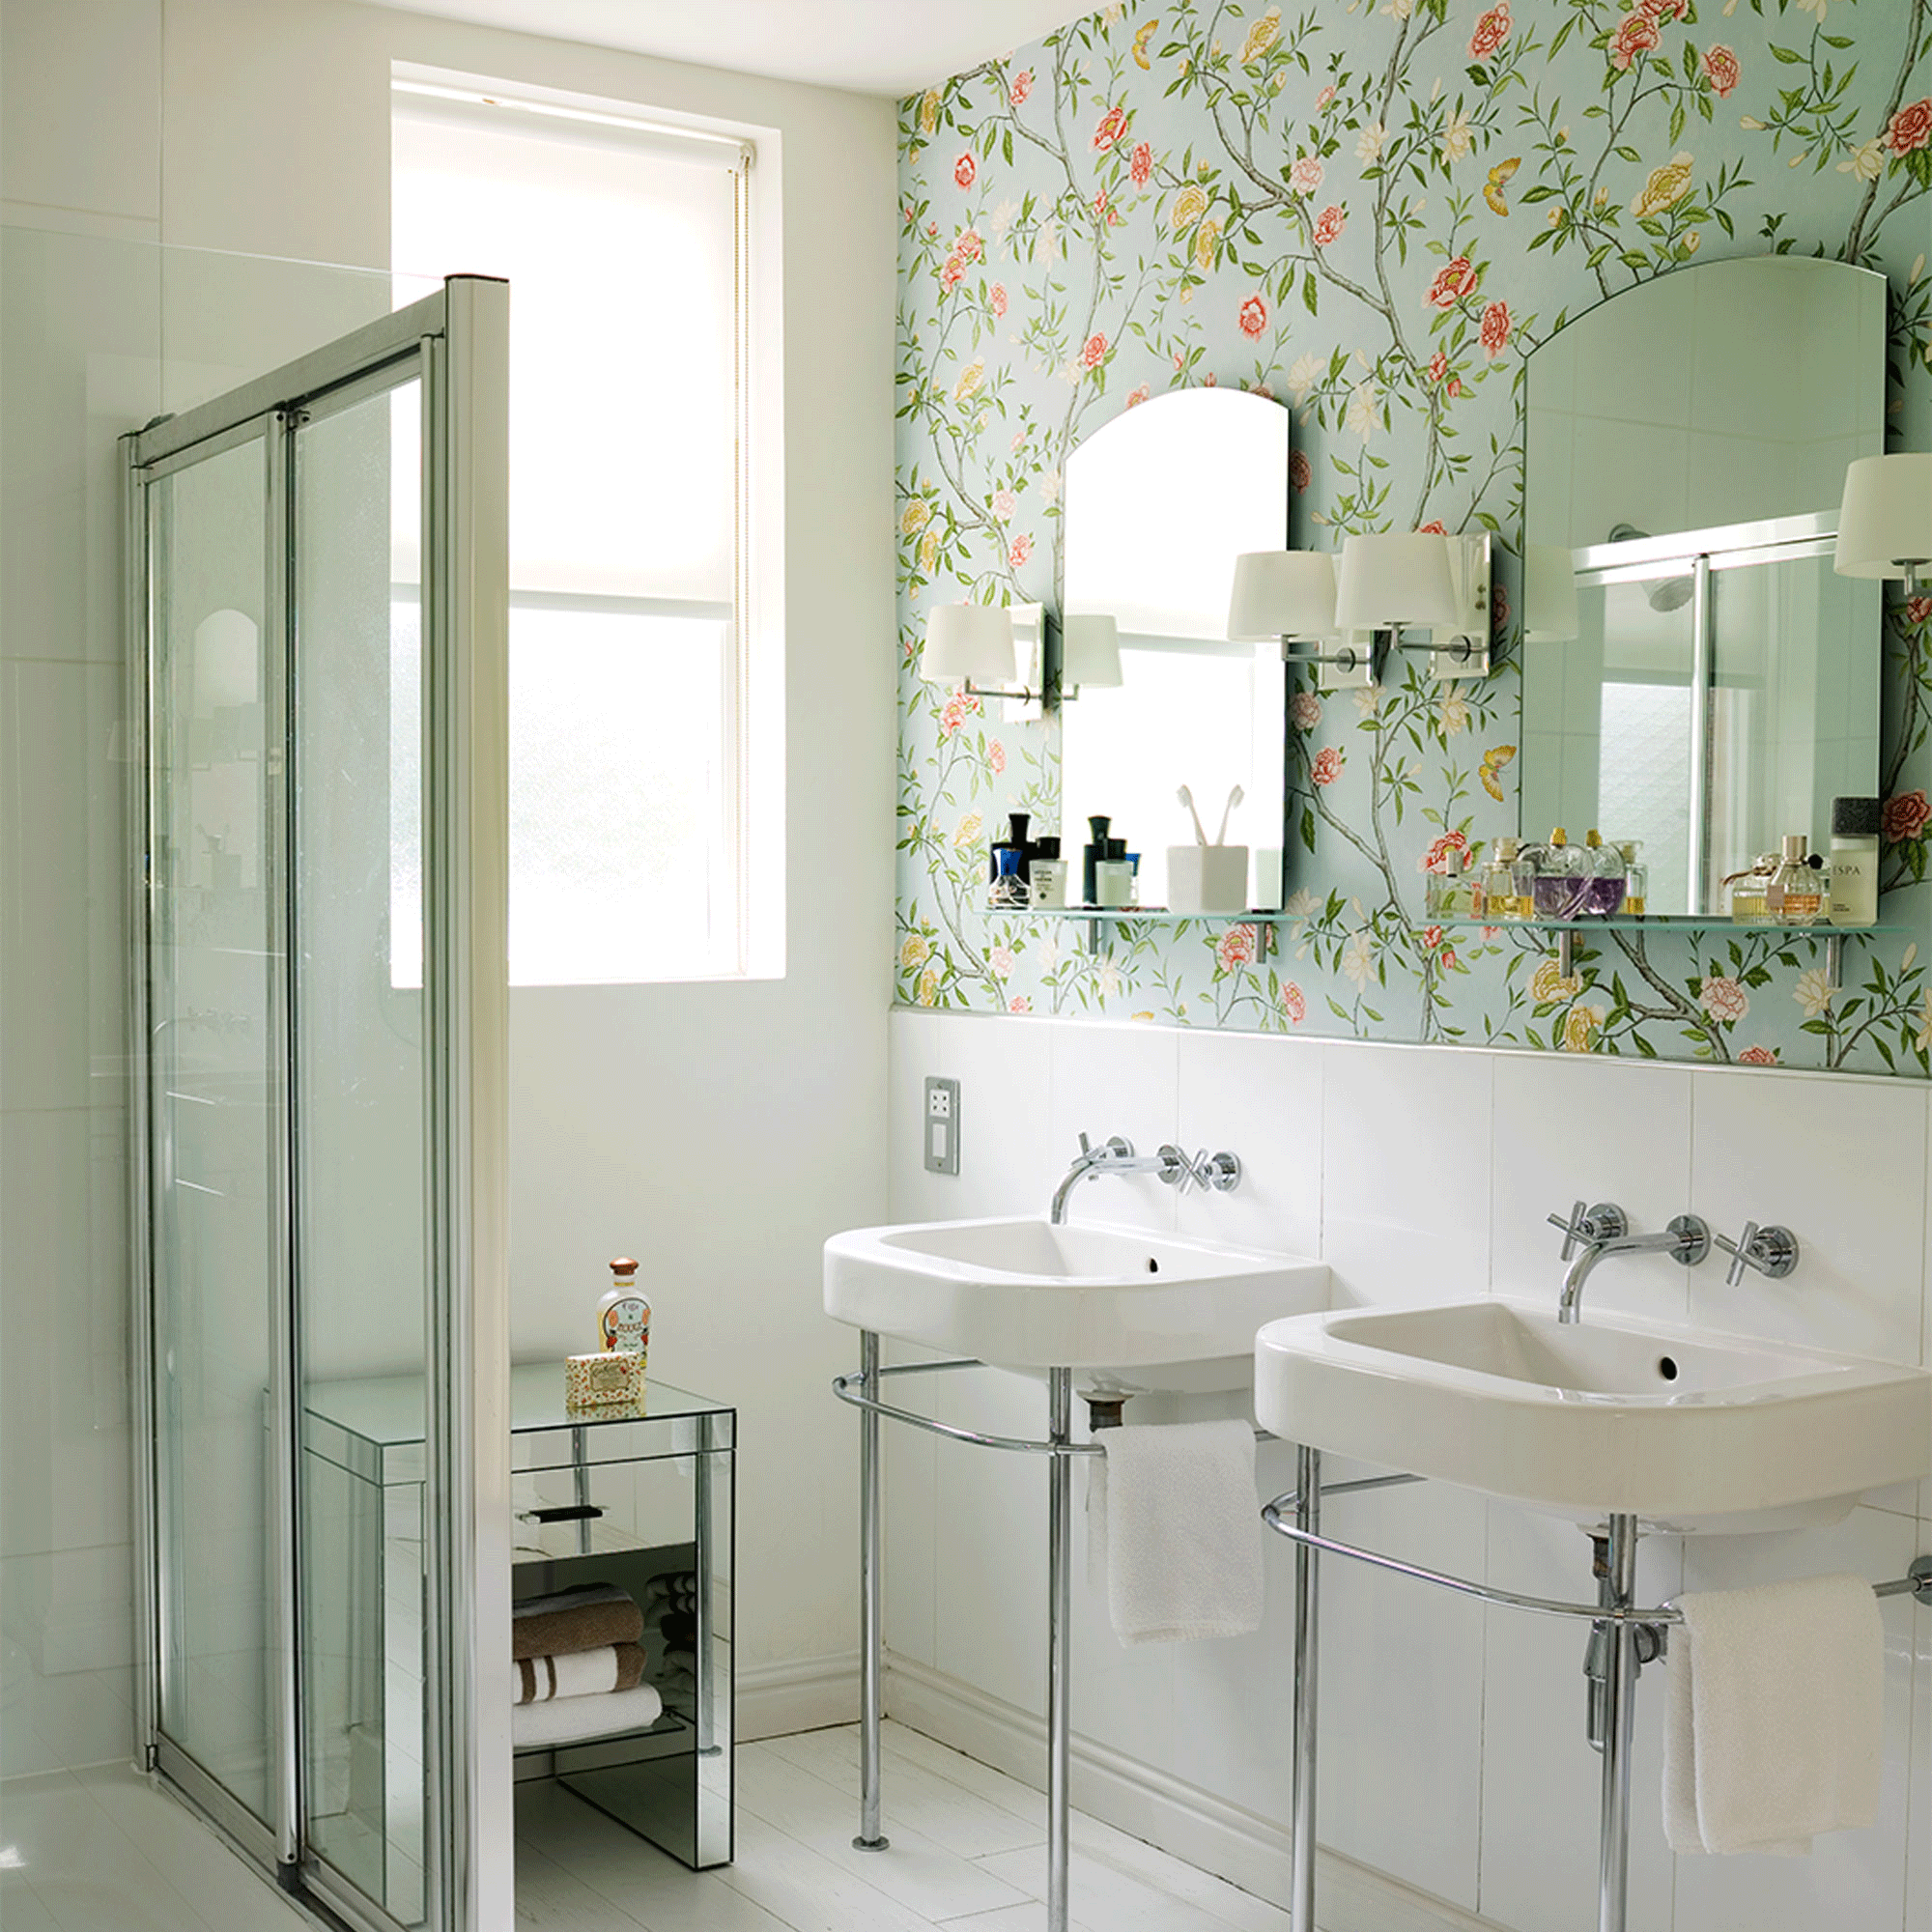 wallpapered bathroom with glass door